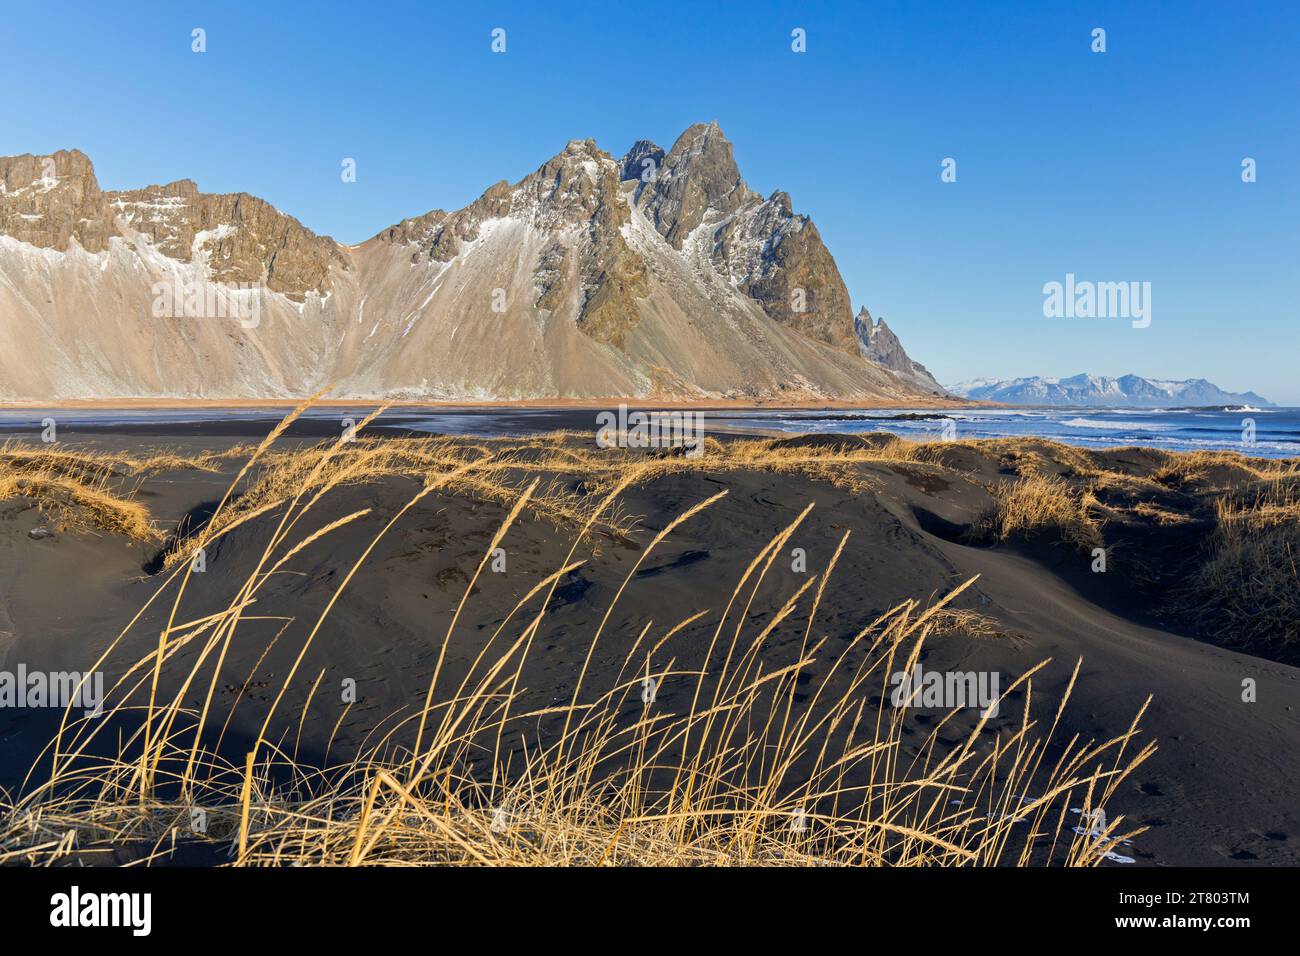 Vestrahorn / Vesturhorn, montagne d'éboulis faite de gabbro et de roches granophyres, partie de la chaîne de montagnes Klifatindur à Stokksnes en hiver, Islande Banque D'Images